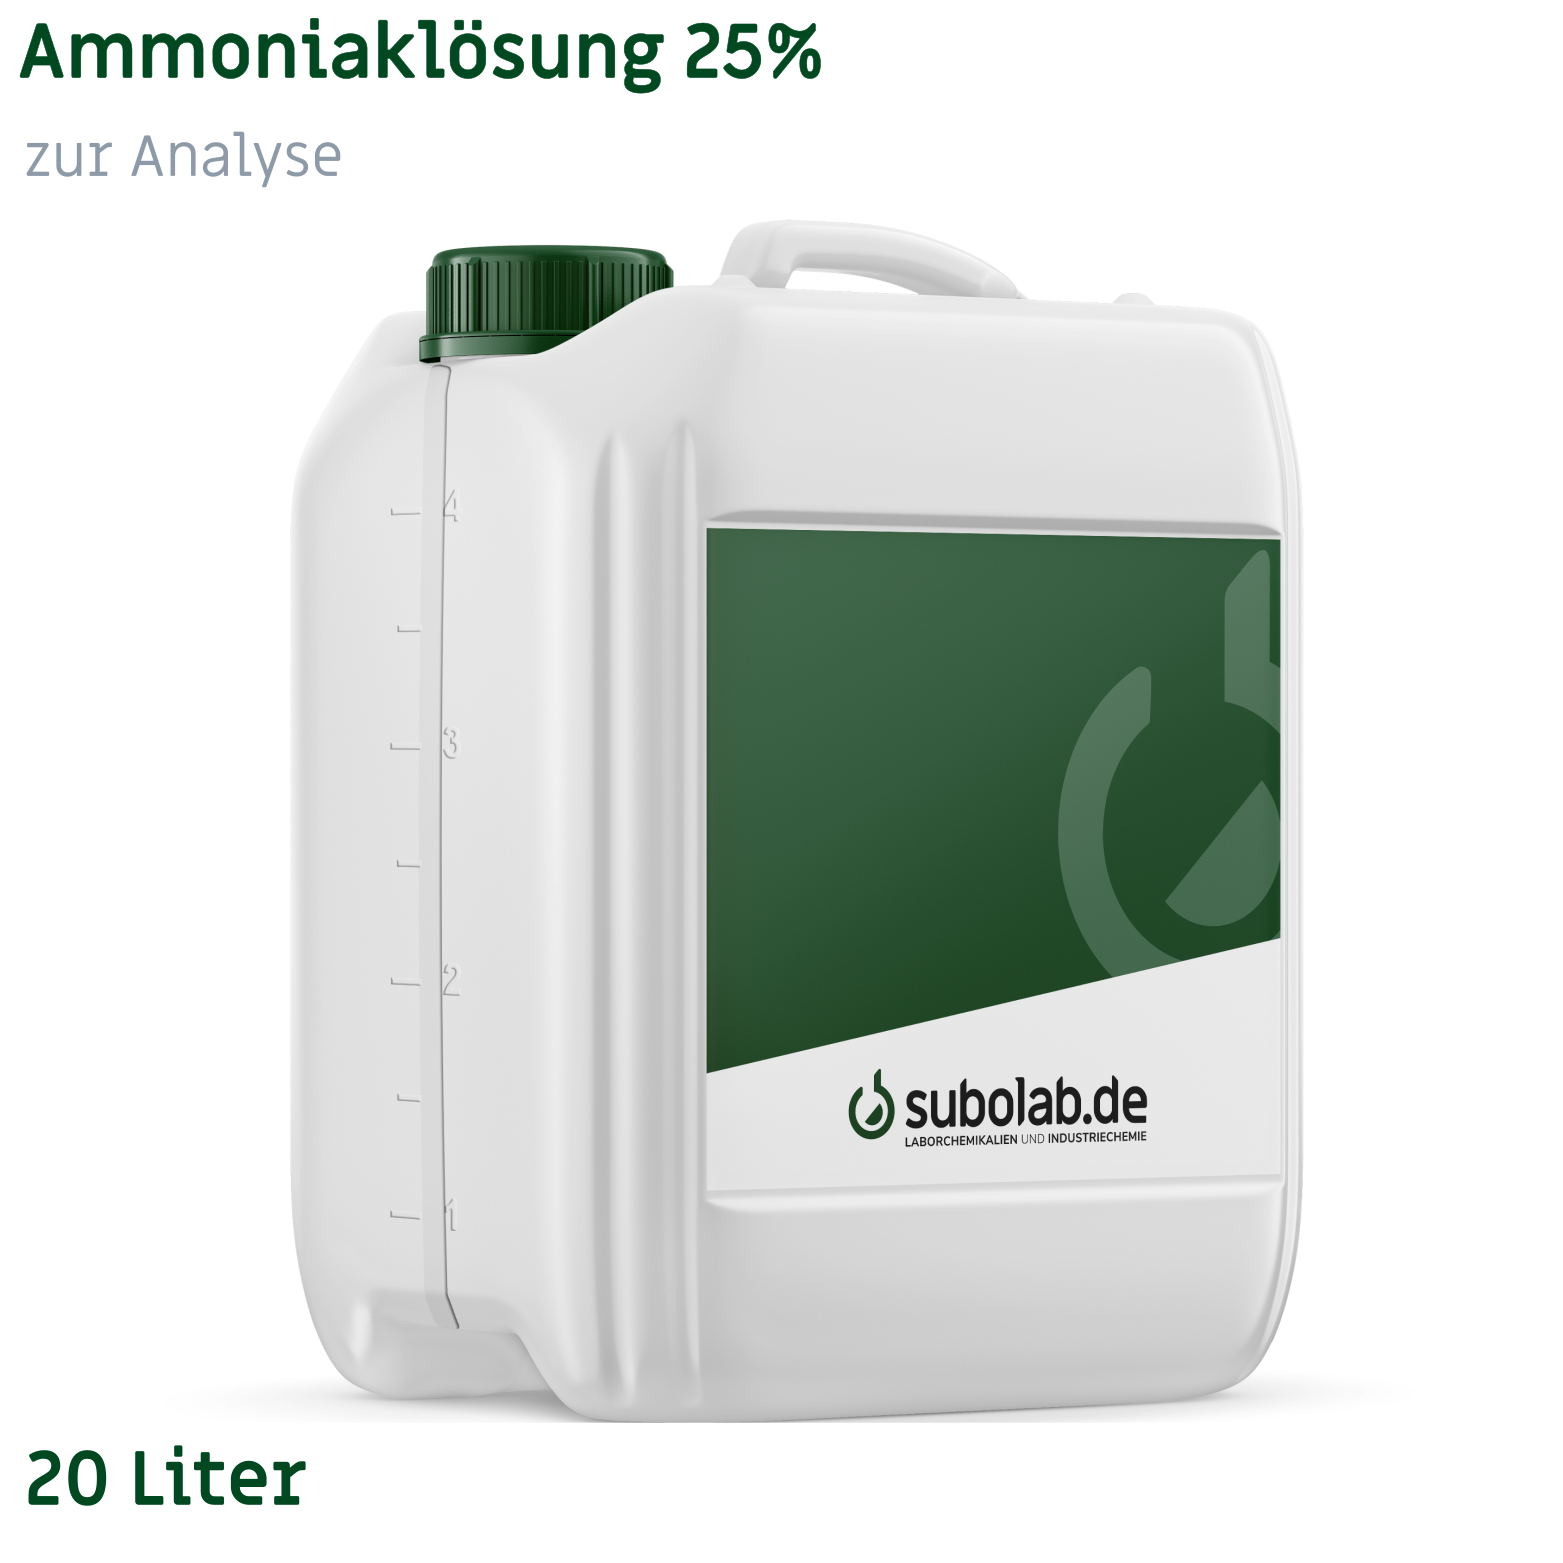 Bild von Ammoniaklösung 25% zur Analyse (20 Liter)